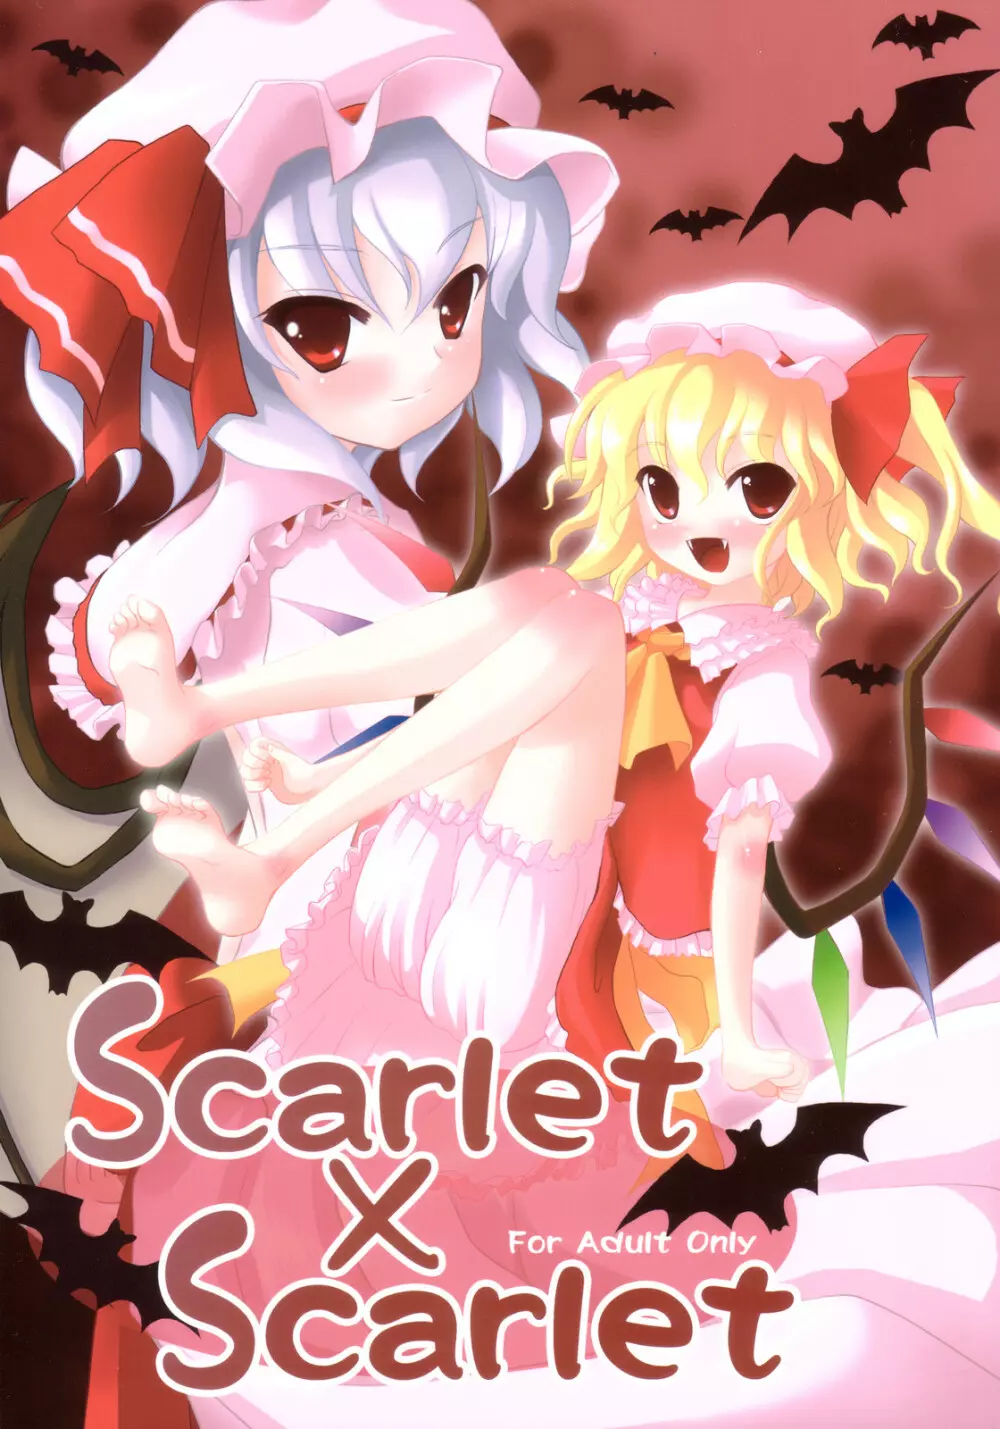 Scarlet×Scarlet